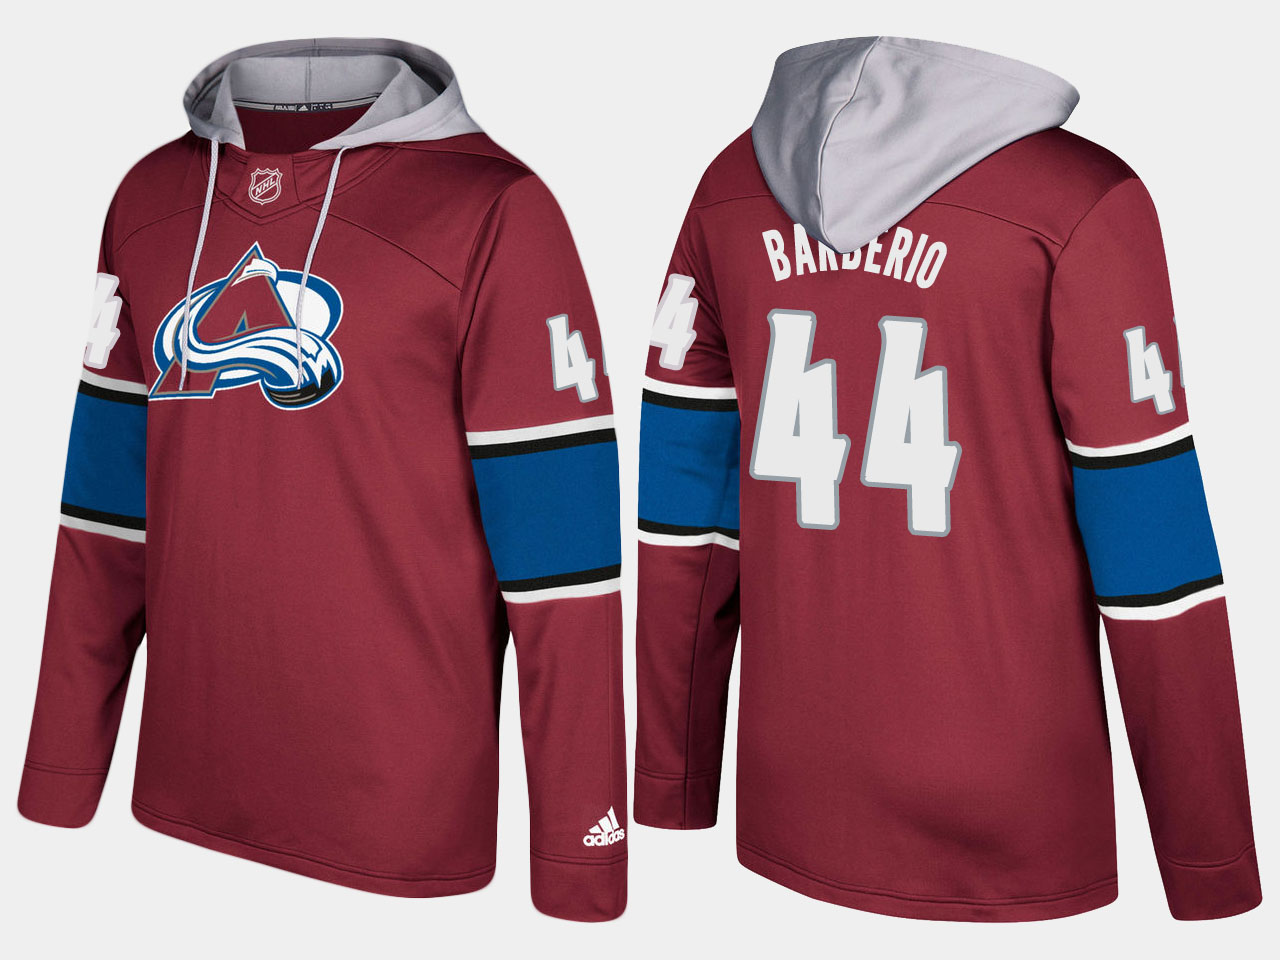 Men NHL Colorado avalanche #44 mark barberio burgundy hoodie->colorado avalanche->NHL Jersey